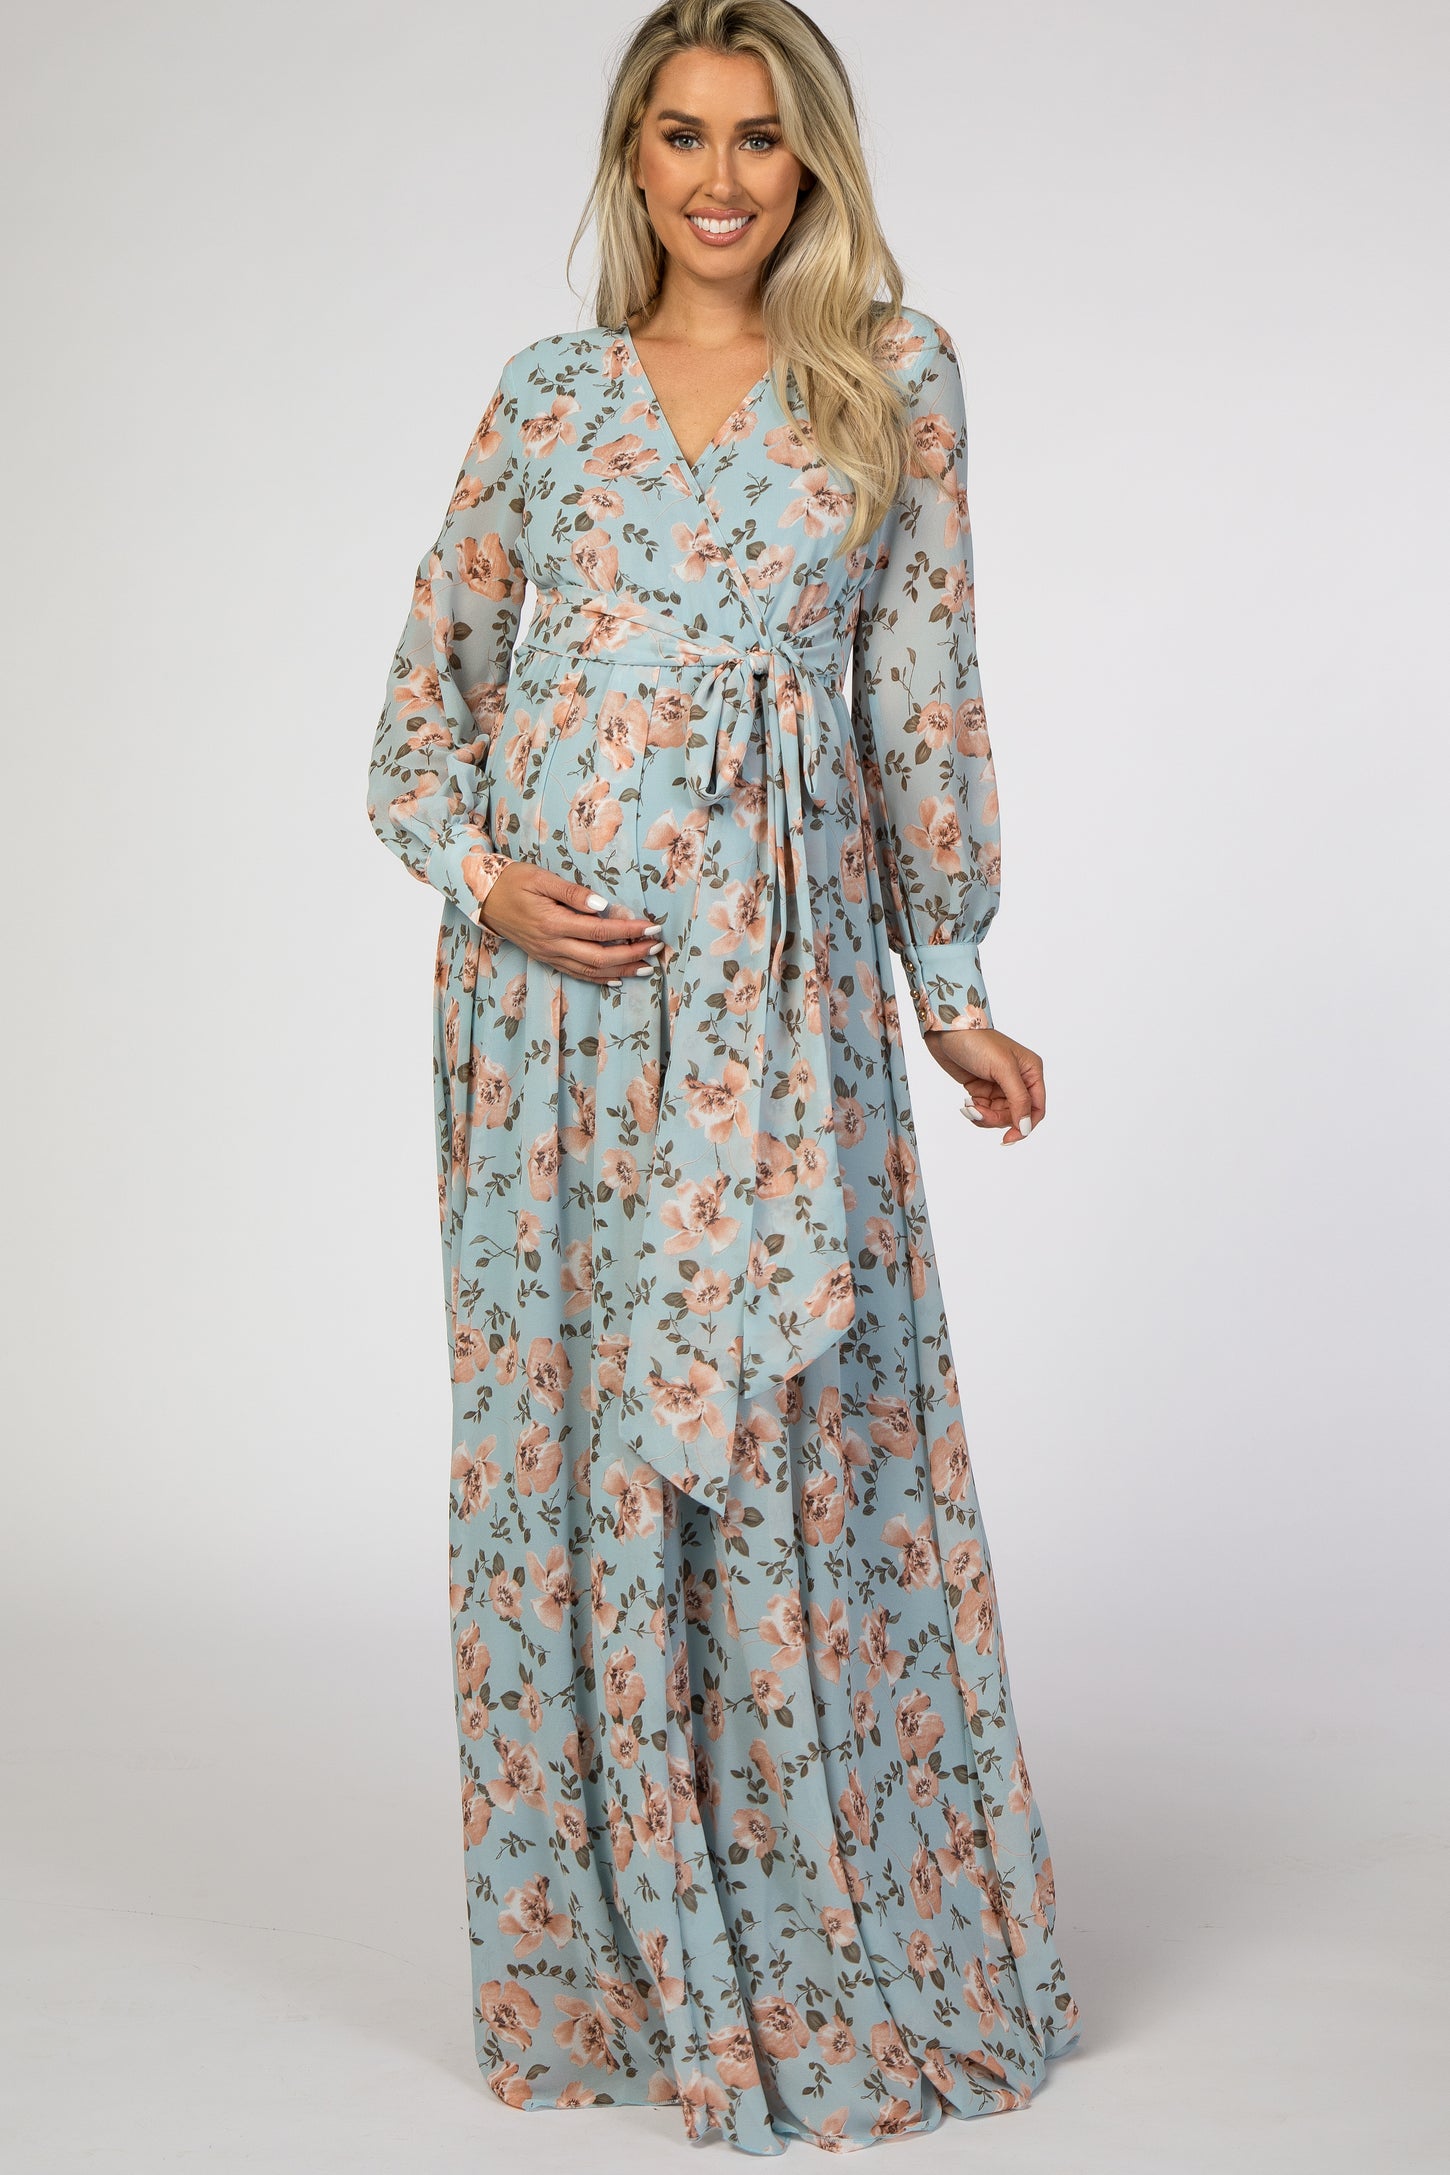 Blue Floral Chiffon Maternity Maxi Dress– PinkBlush